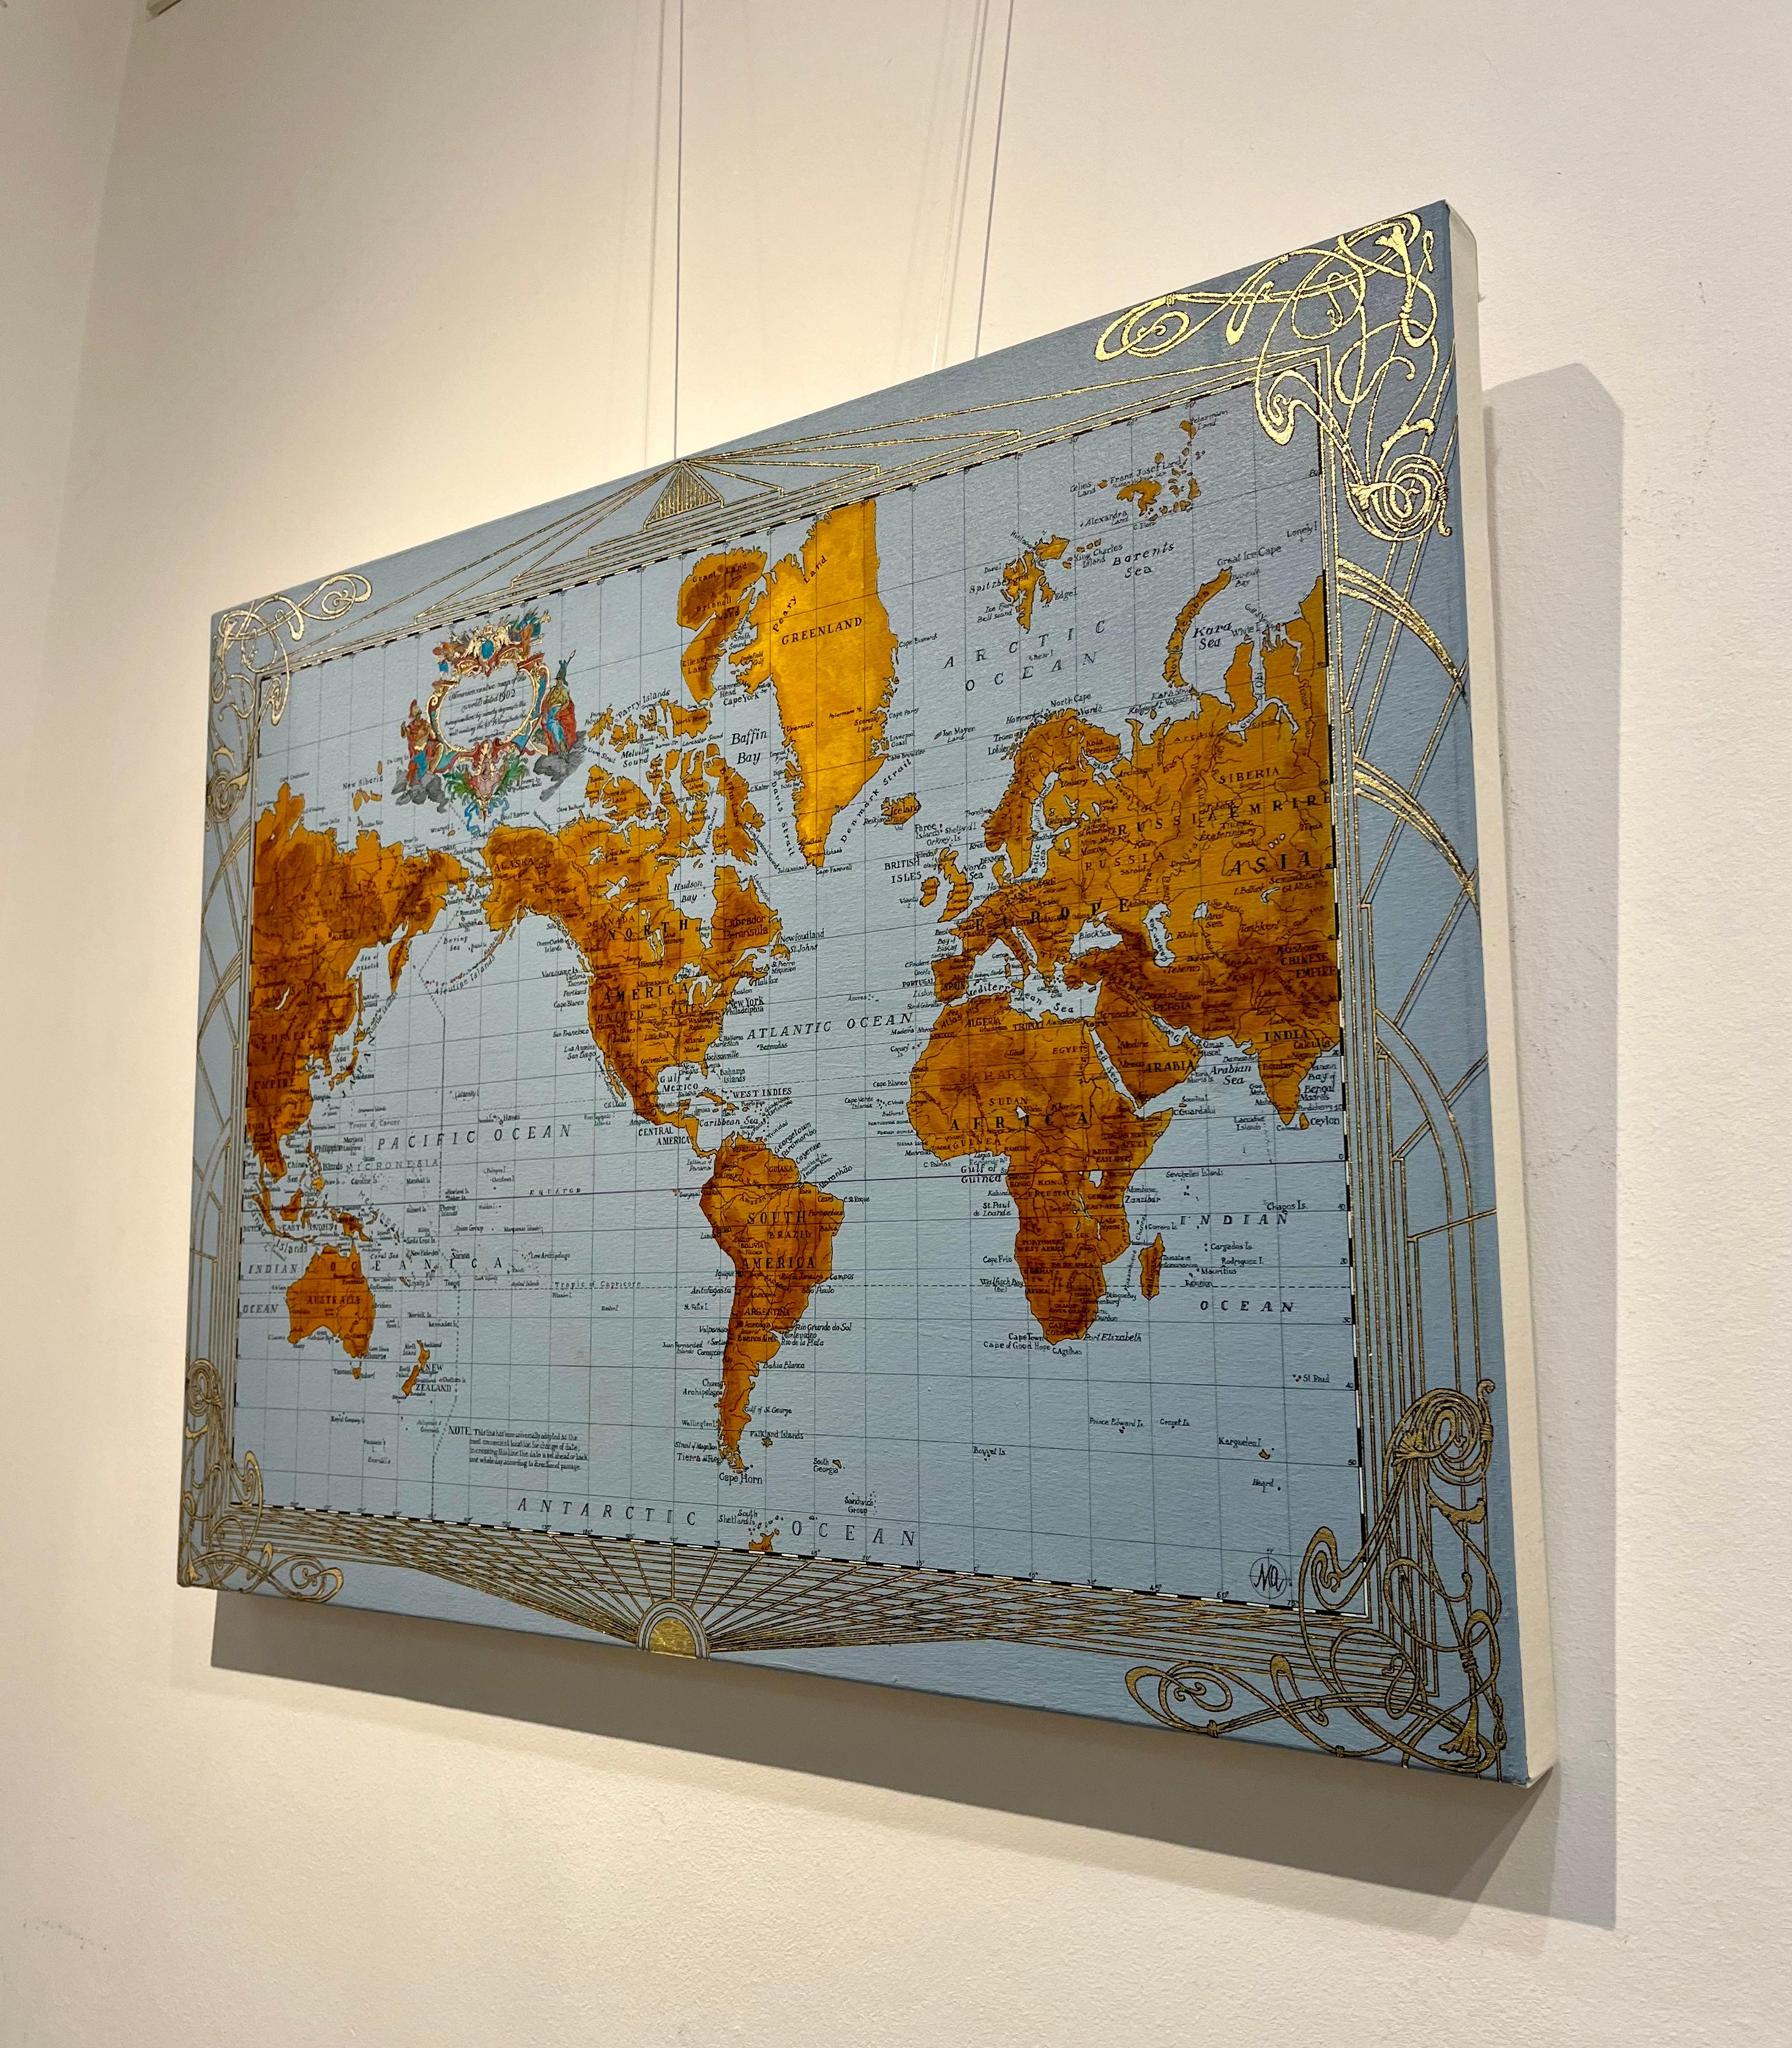 Americacentric Map of the World von 1902 - Gemälde, Mischtechnik, Vergoldung, Tinte, Karte (Zeitgenössisch), Mixed Media Art, von Marco Araldi